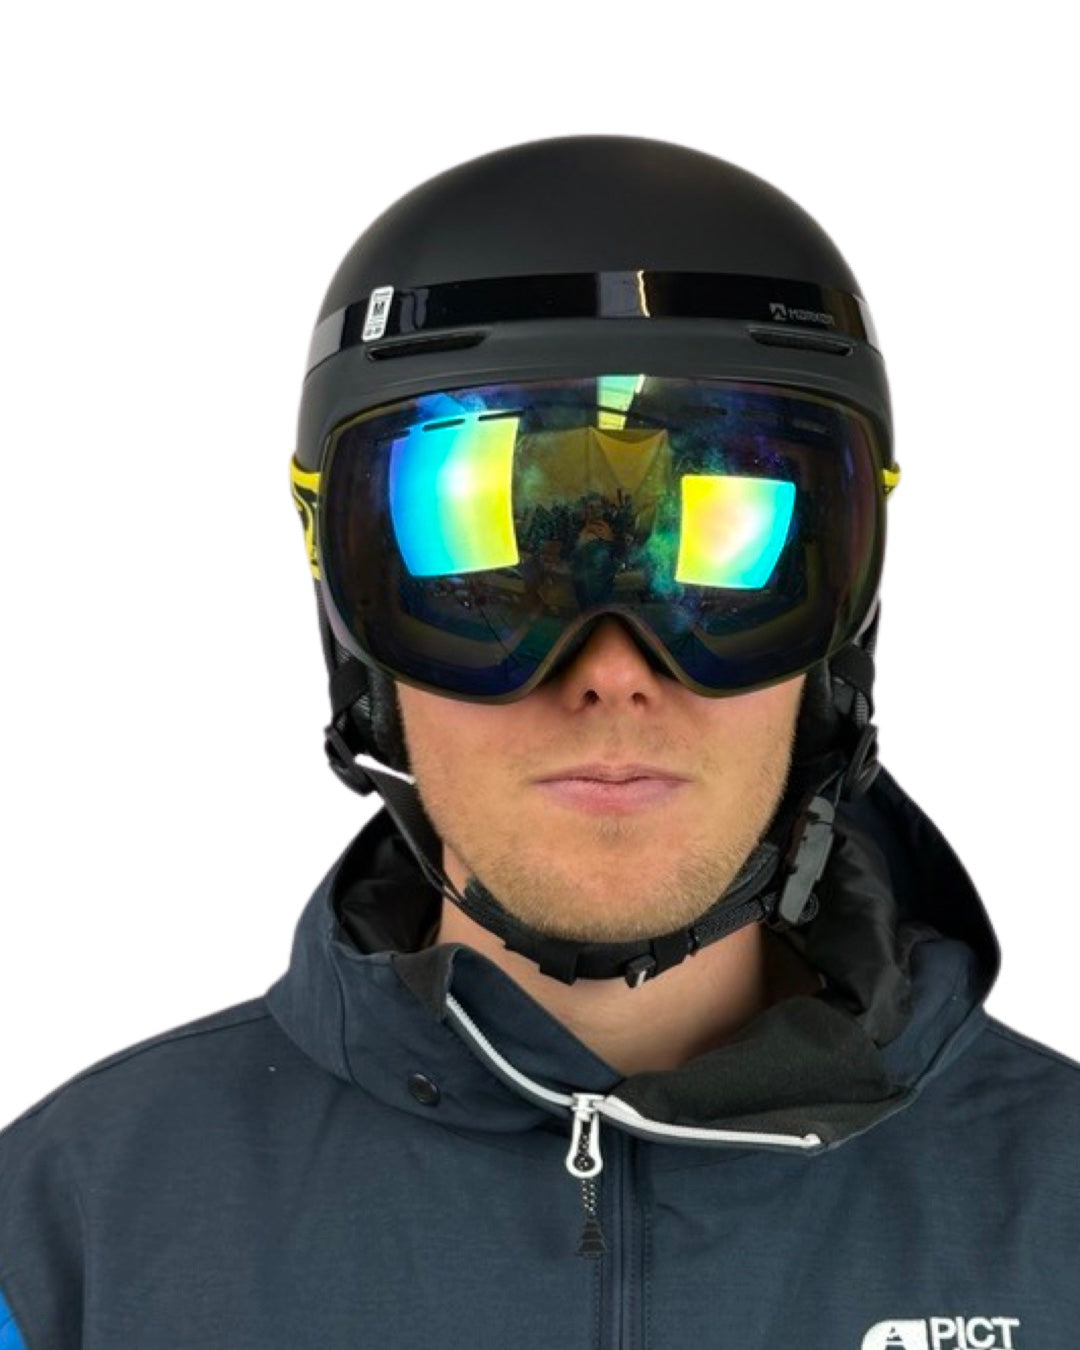 Ski goggles HypeSnow Yellow